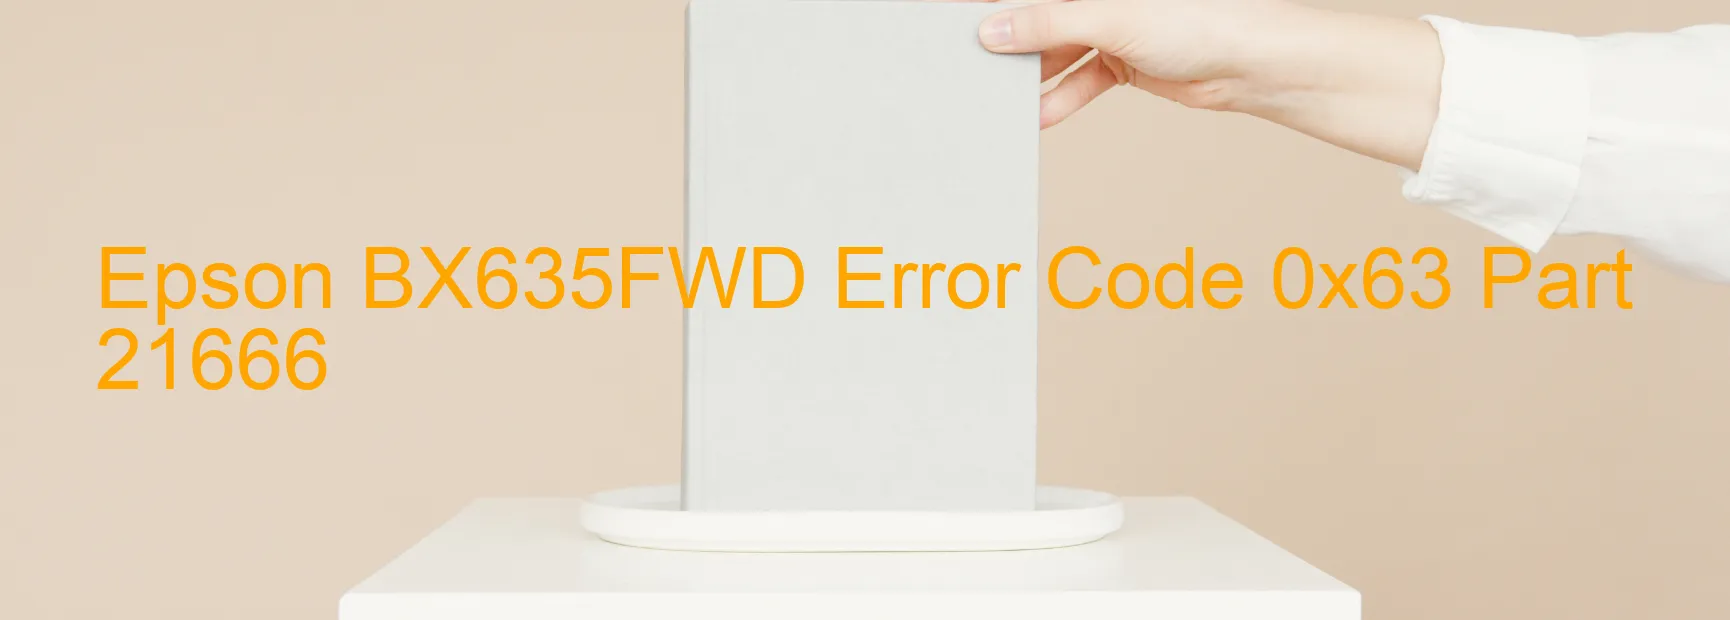 Epson BX635FWD Error 0x63